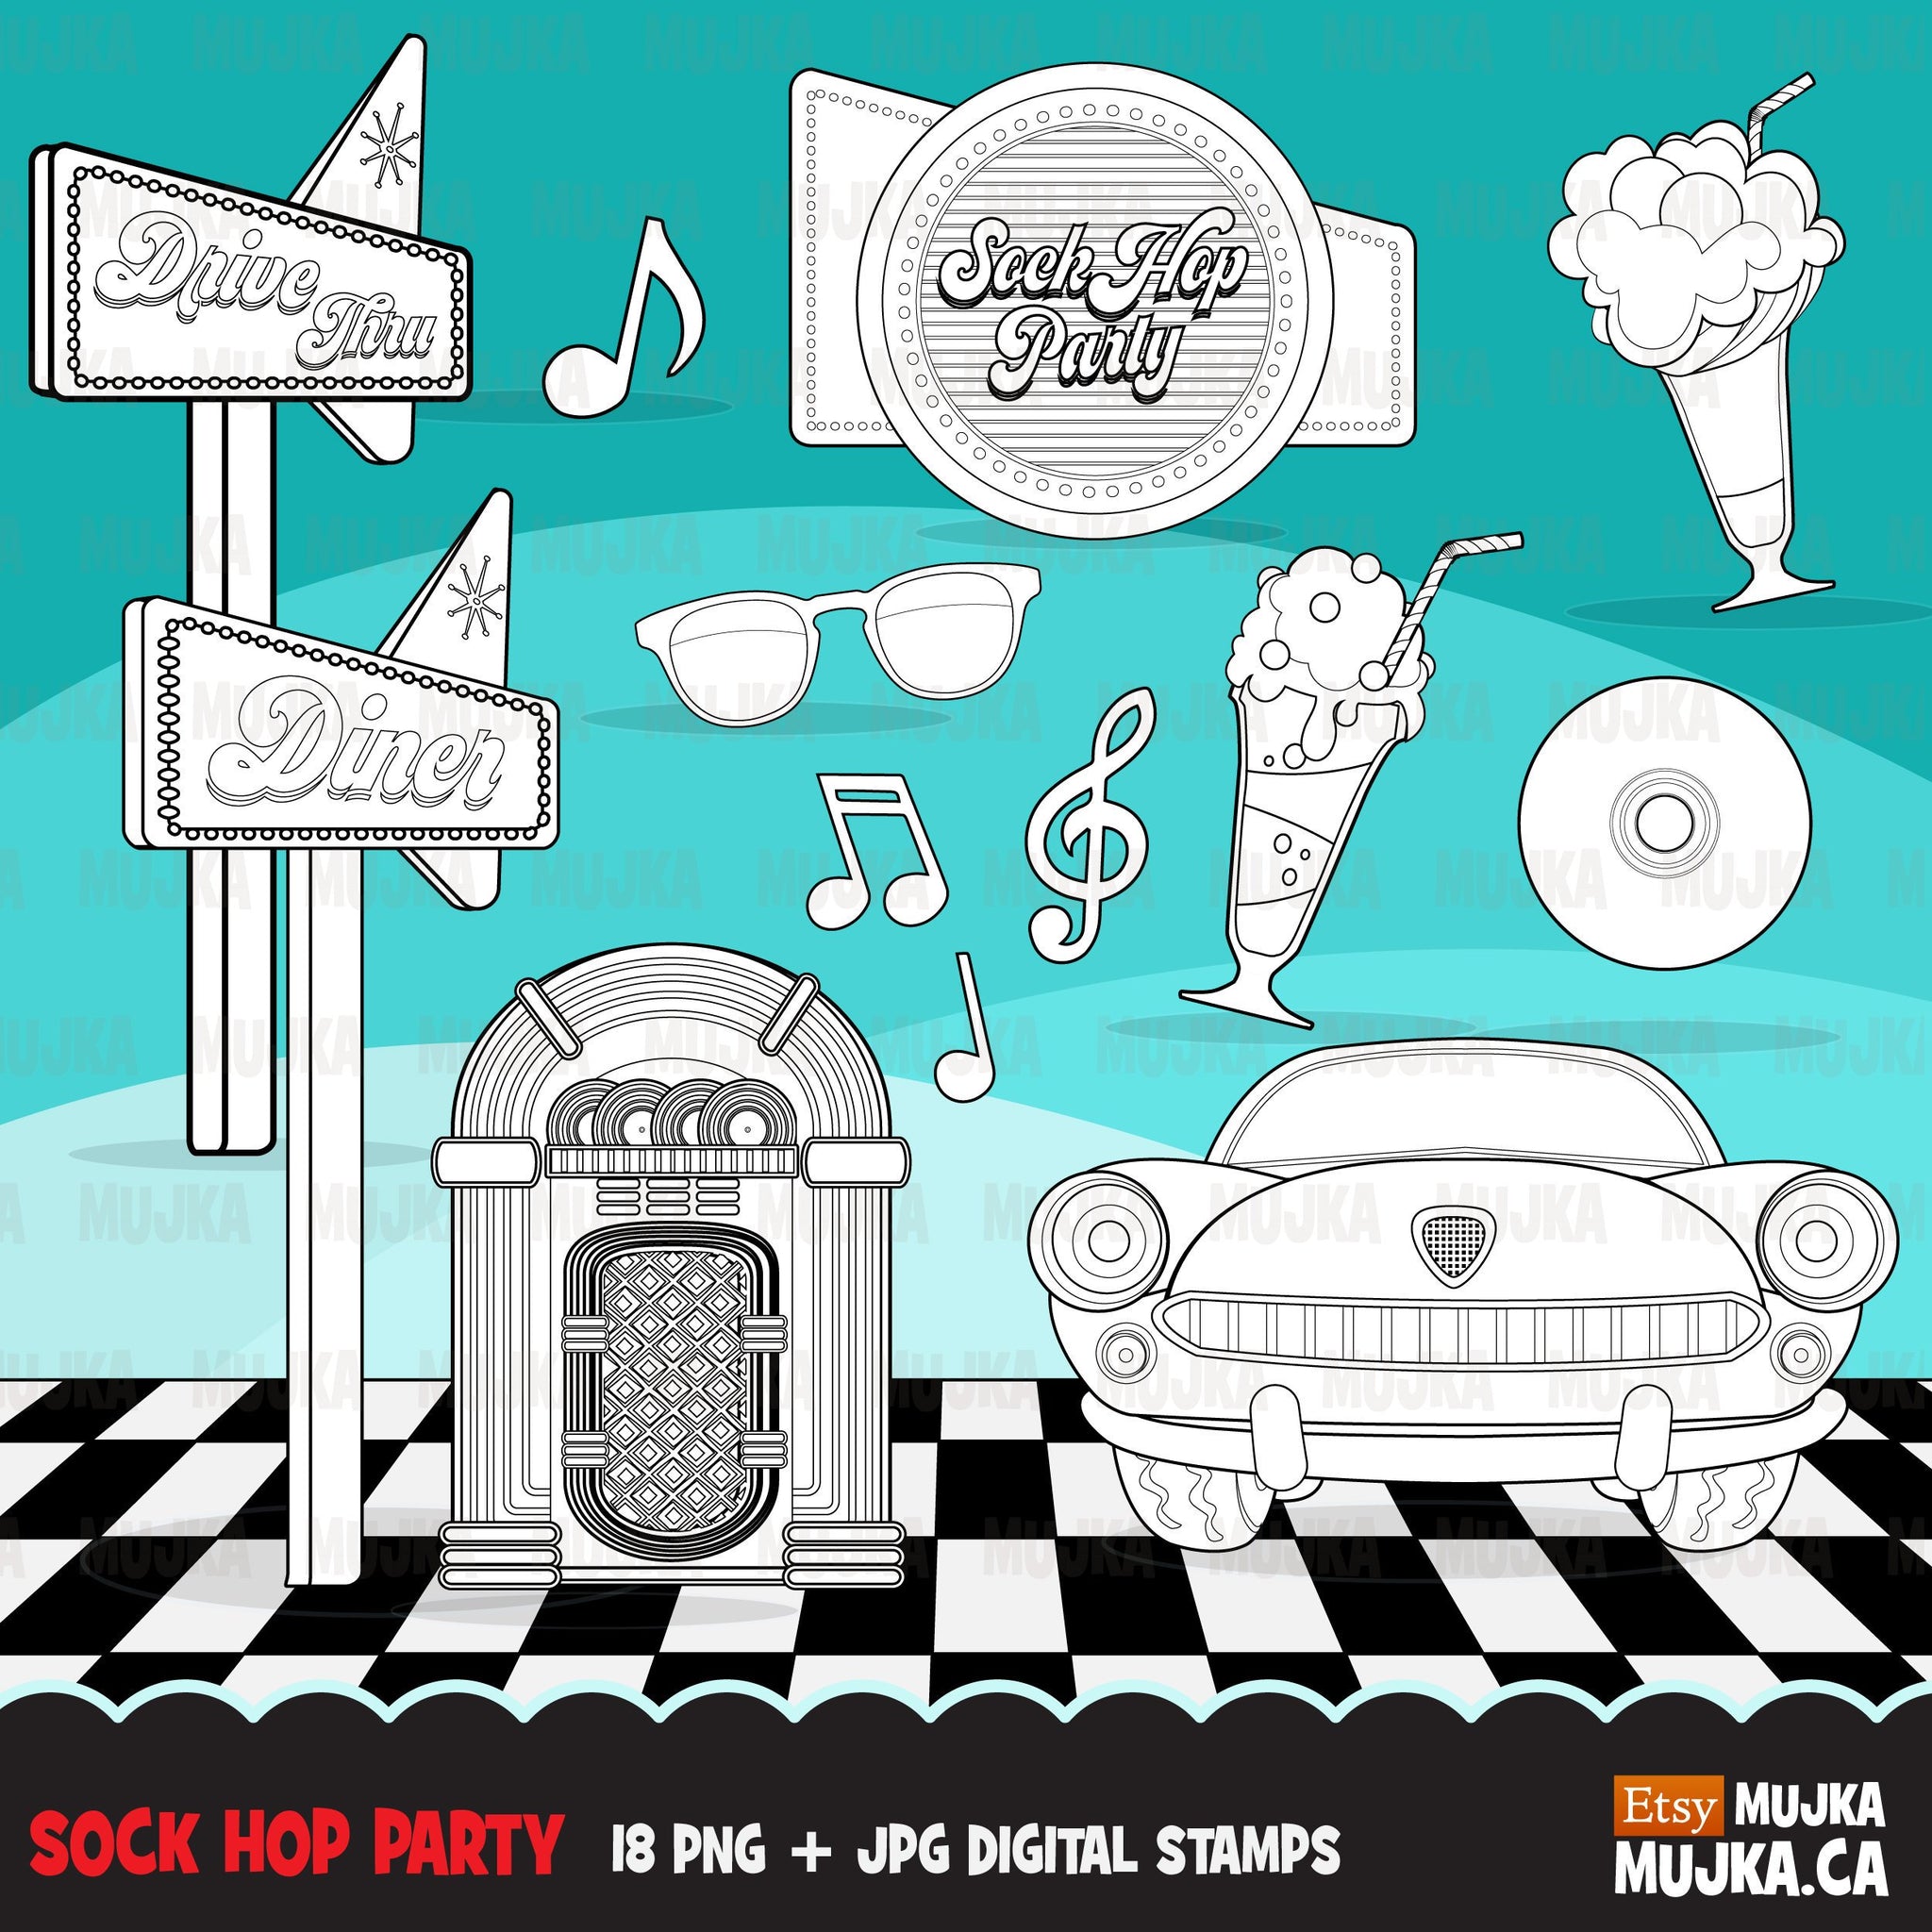 Sock Hop Party, 50's diner graphics Digital Stamps